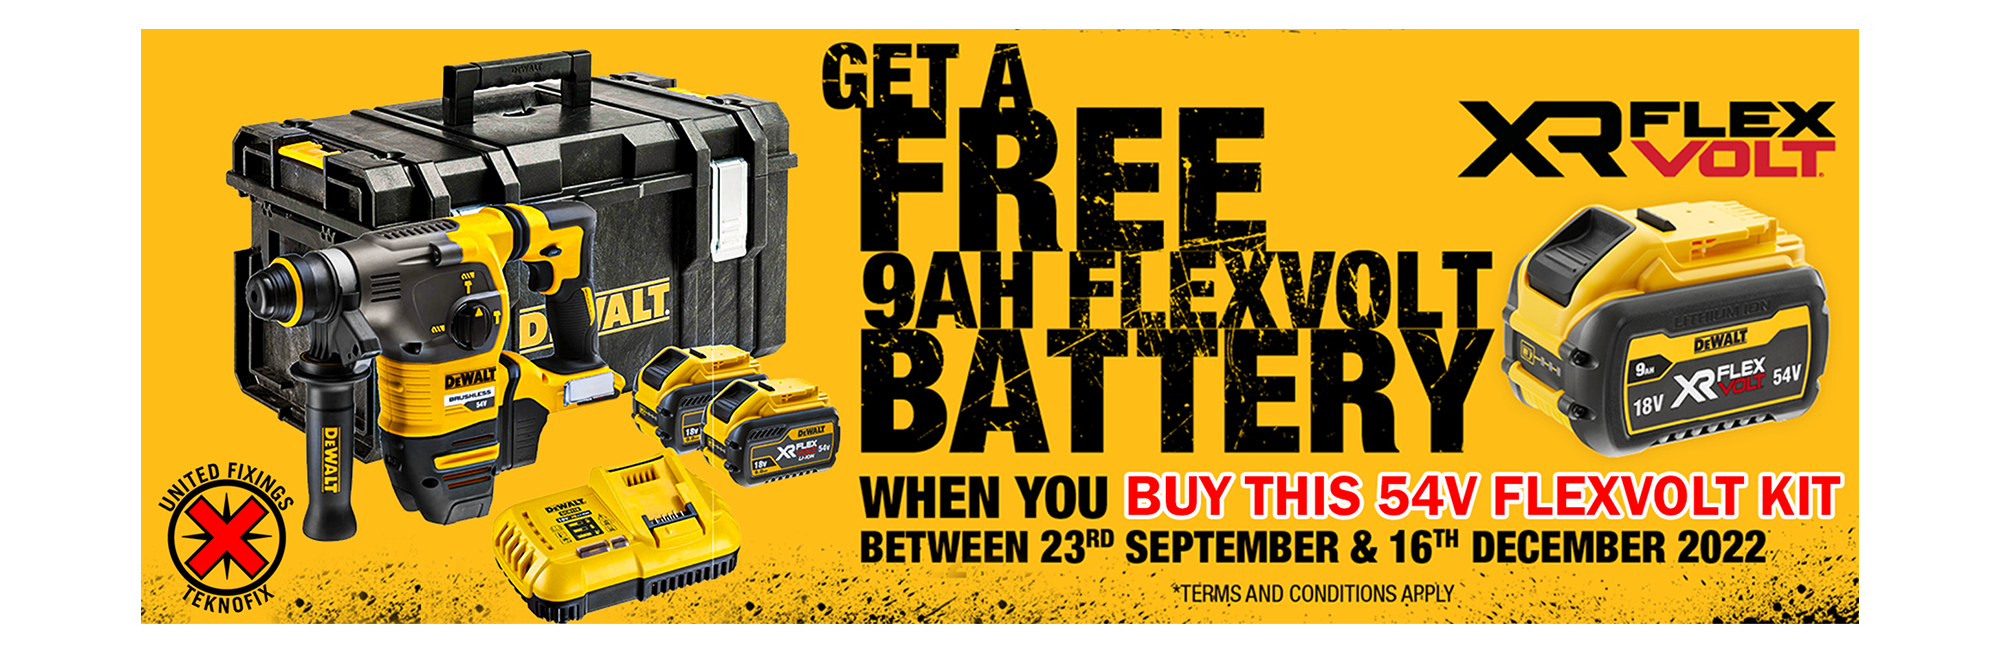 Get a FREE 9ah Flexvolt Battery when you buy a DeWalt Flexvolt Kit